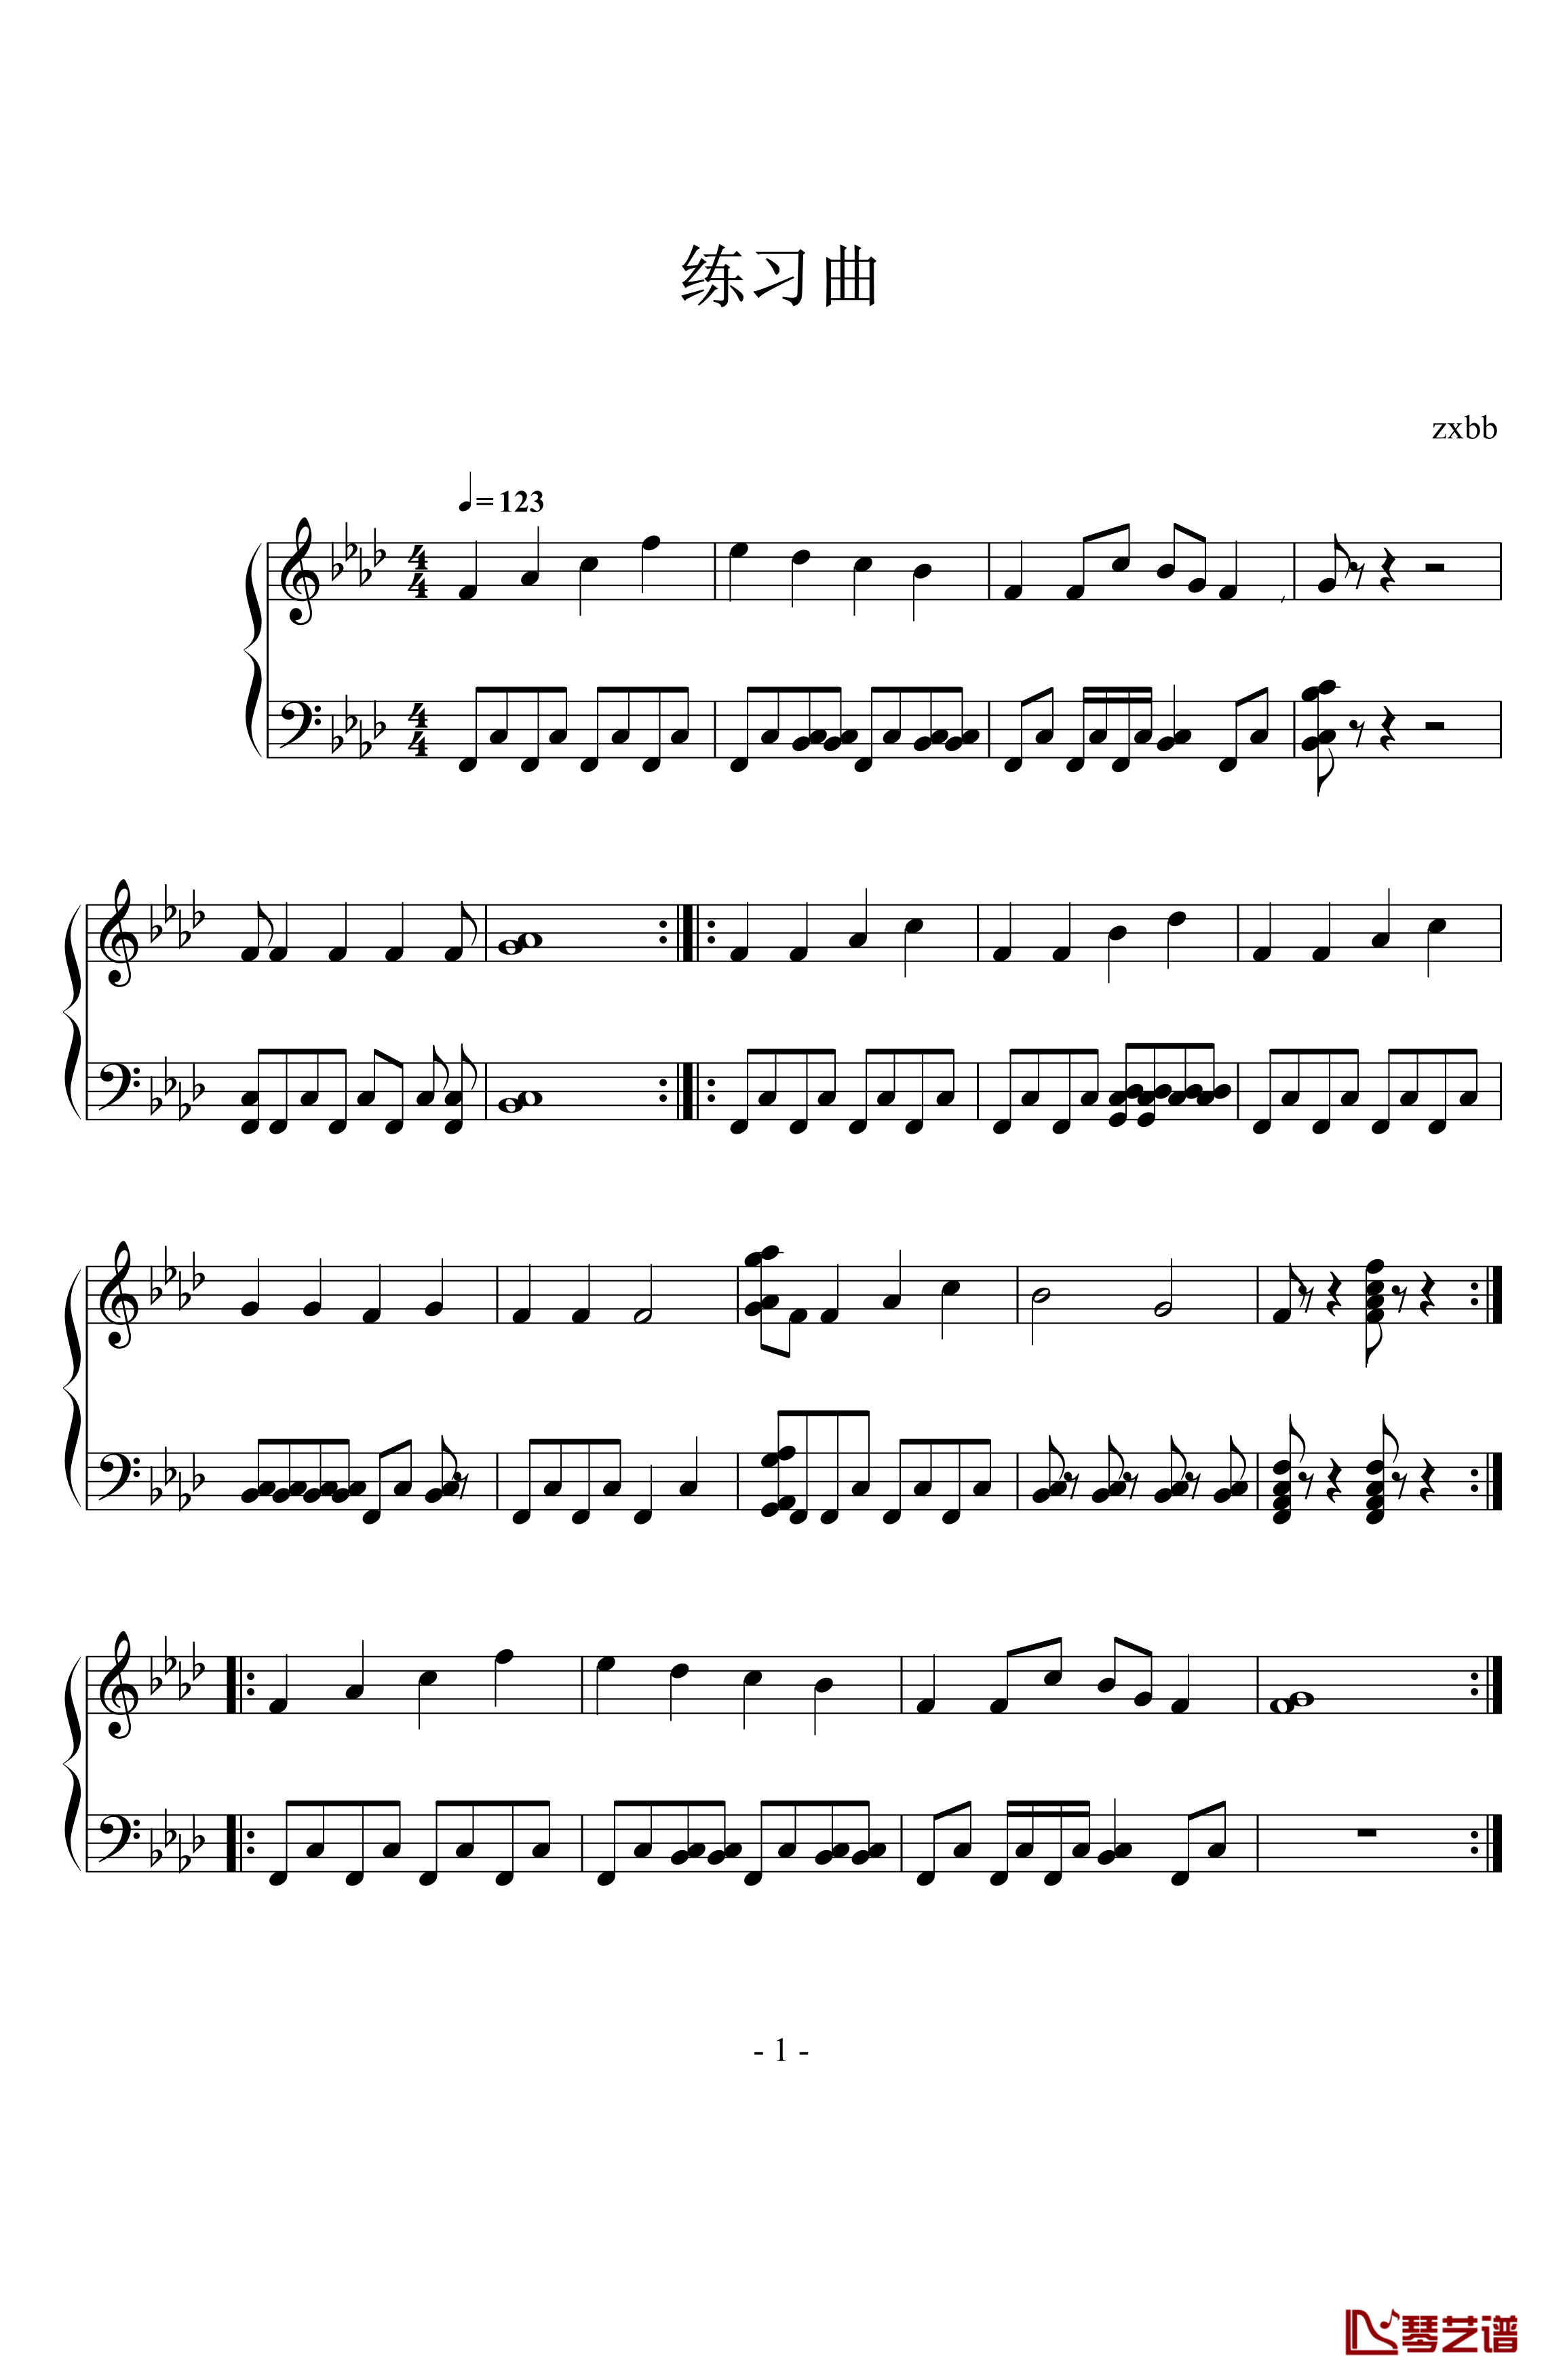 练习曲钢琴谱-zxbb1